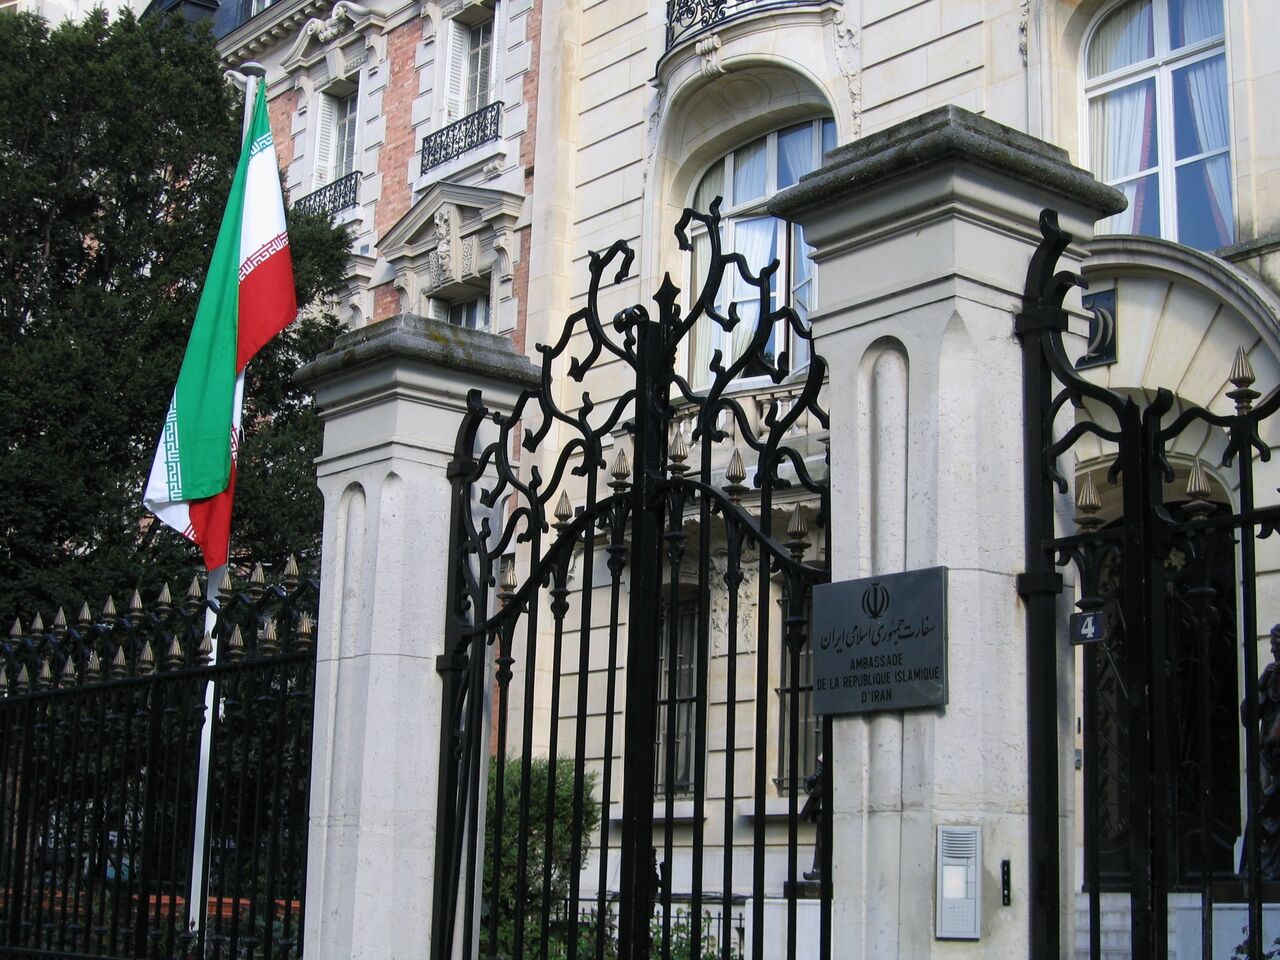  پاسخ سفارت ایران در فرانسه به ادعاهای سفارت ریاض در پاریس 